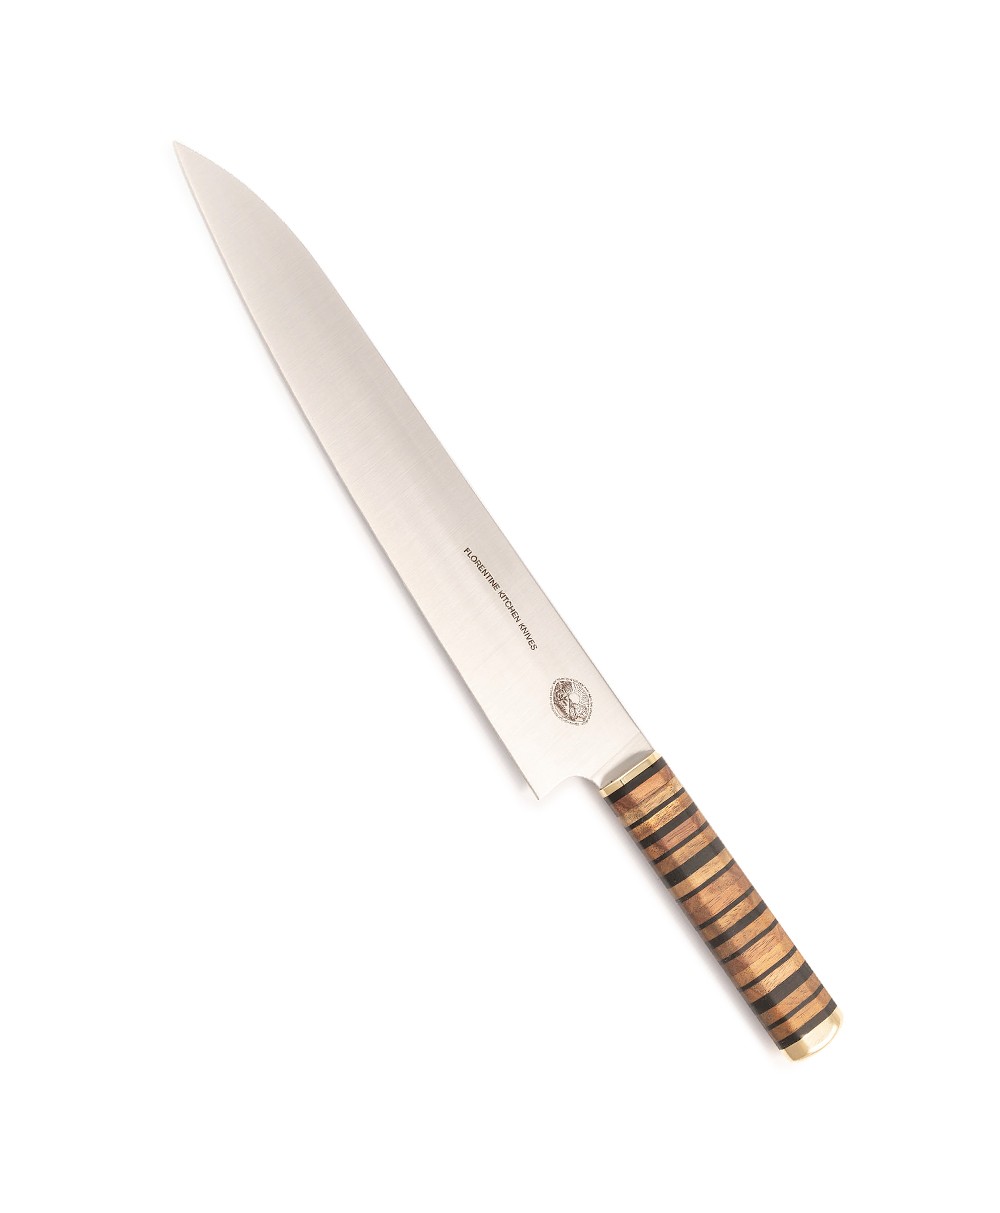 Produktbild des Kedma Sujihiki Schneidemesser in wood & black von Florentine Kitchen Knives im RAUM concept store 